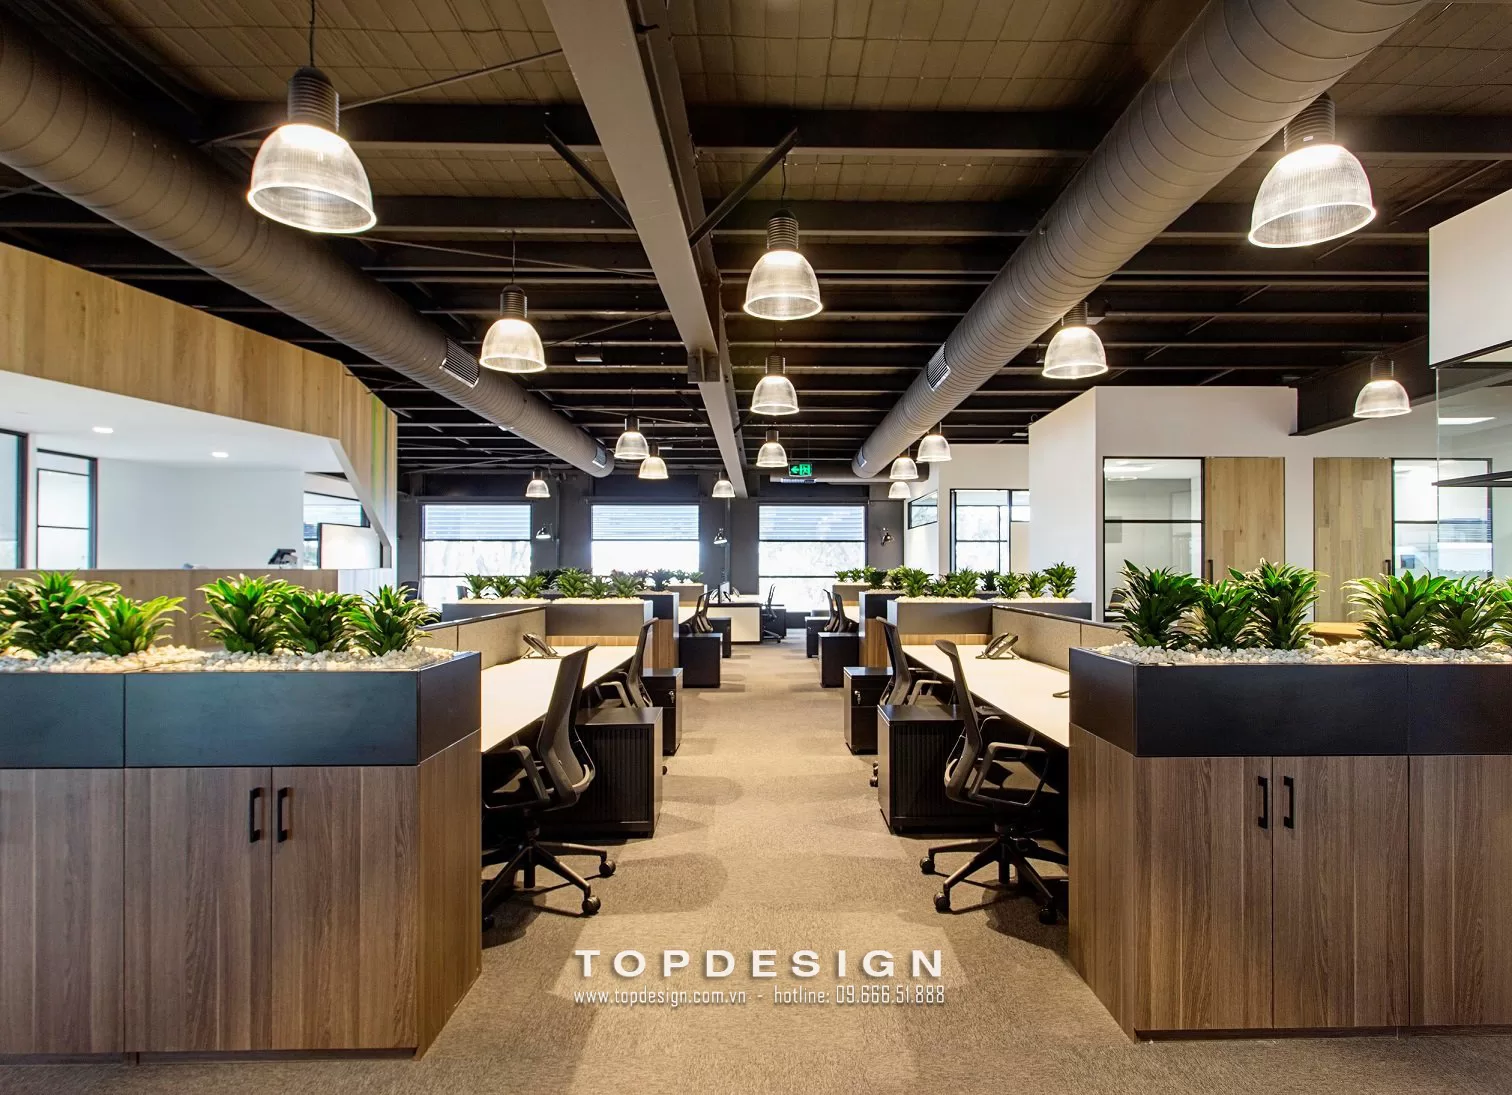 Mẫu thiết kế văn phòng phong cách công nghiệp - TOPDESIGN - 10